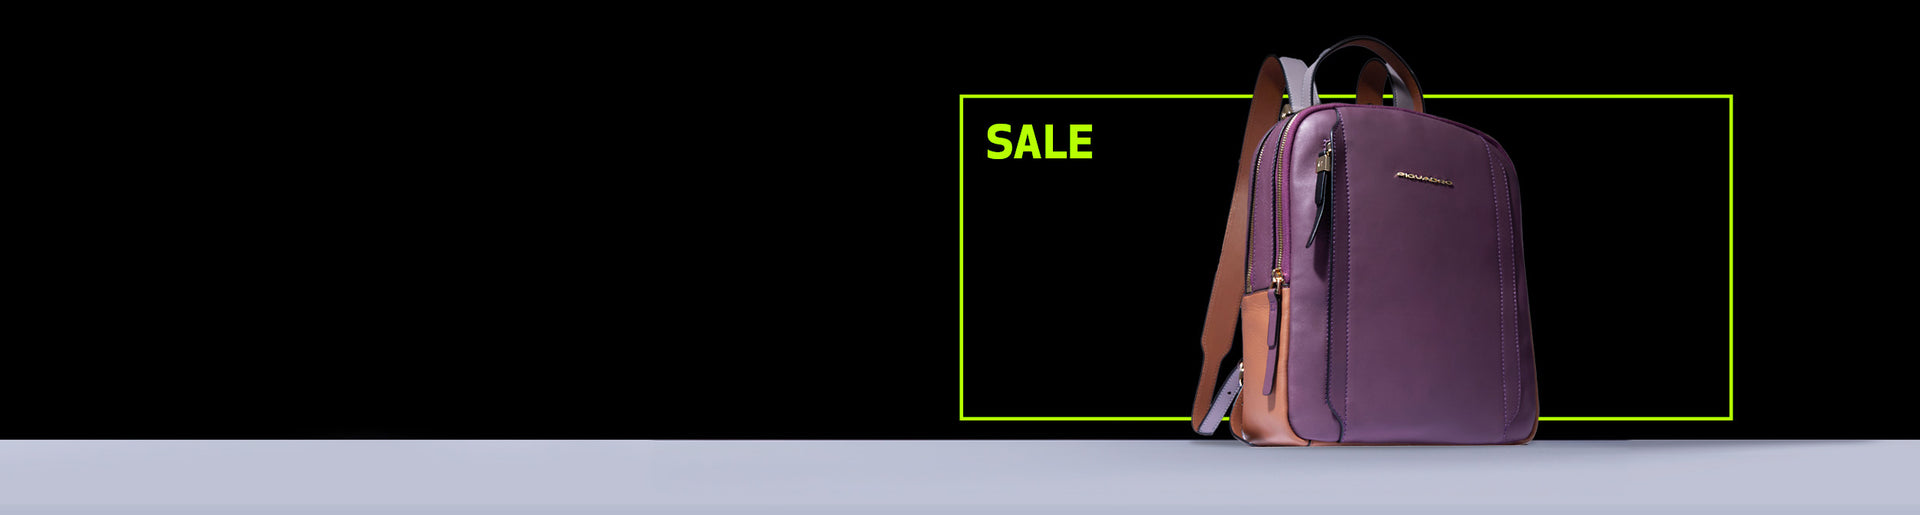 Sale - Women